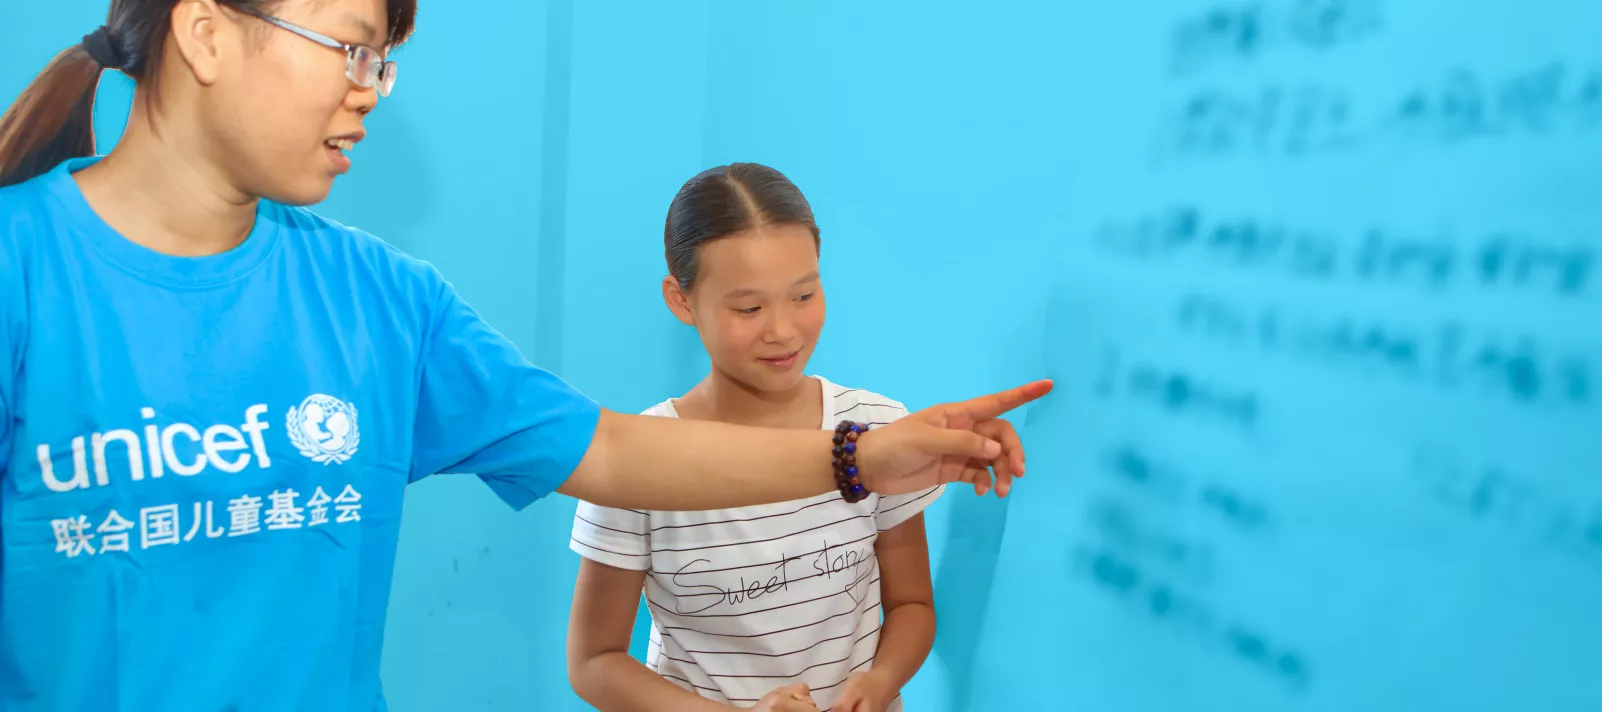 UNICEF volunteer teaching in school, China.